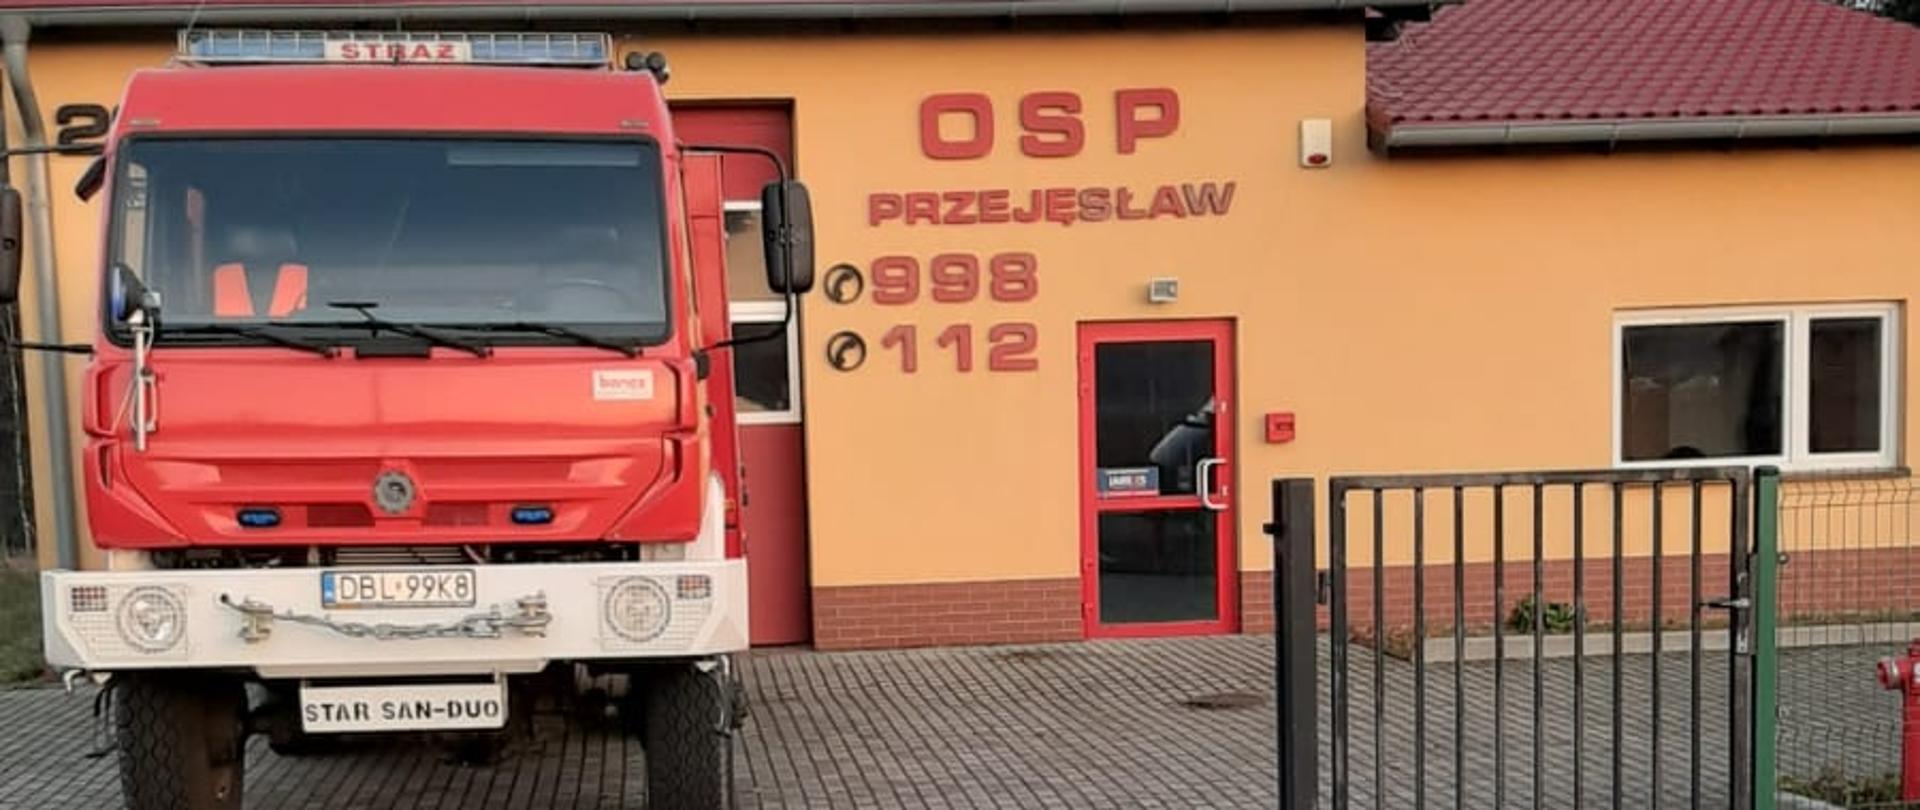 OSP_Przejęsław